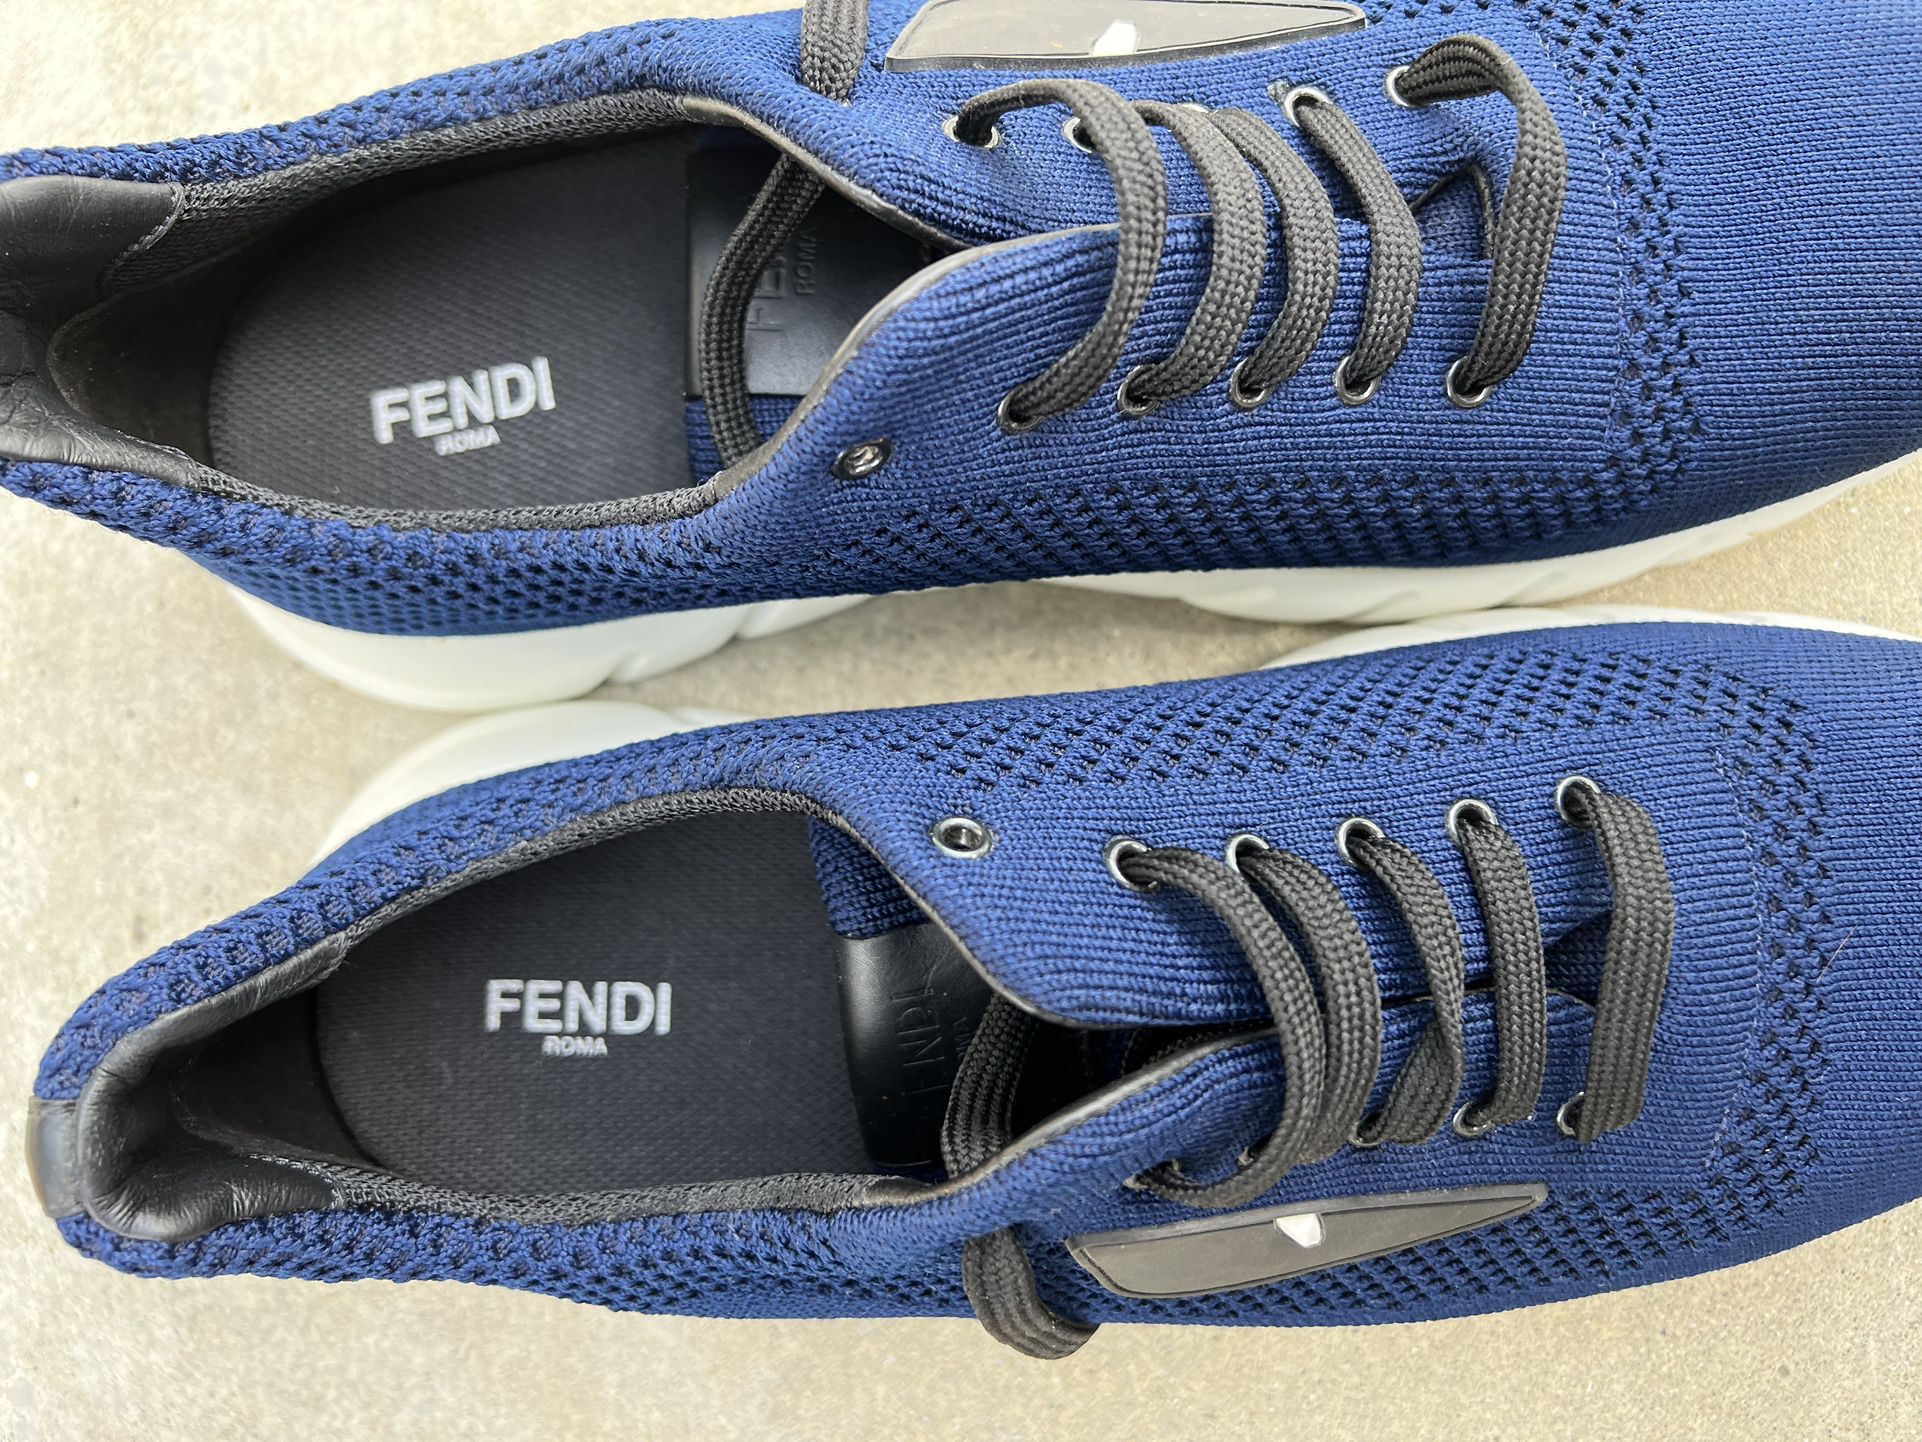 Fendi Shoes Original for Sale in Miami, FL - OfferUp